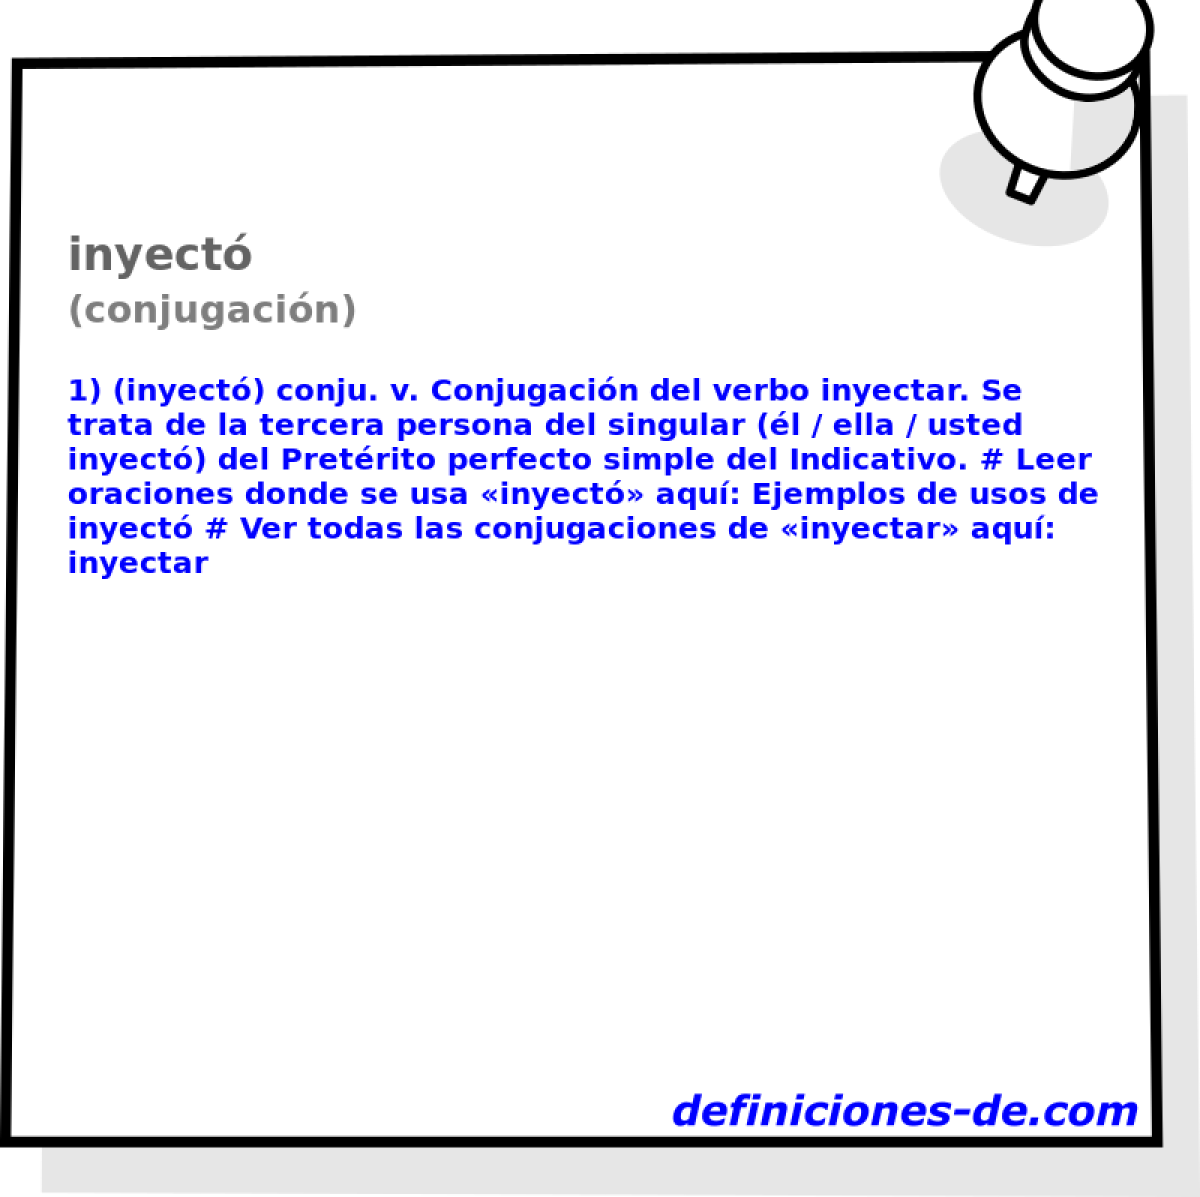 inyect (conjugacin)